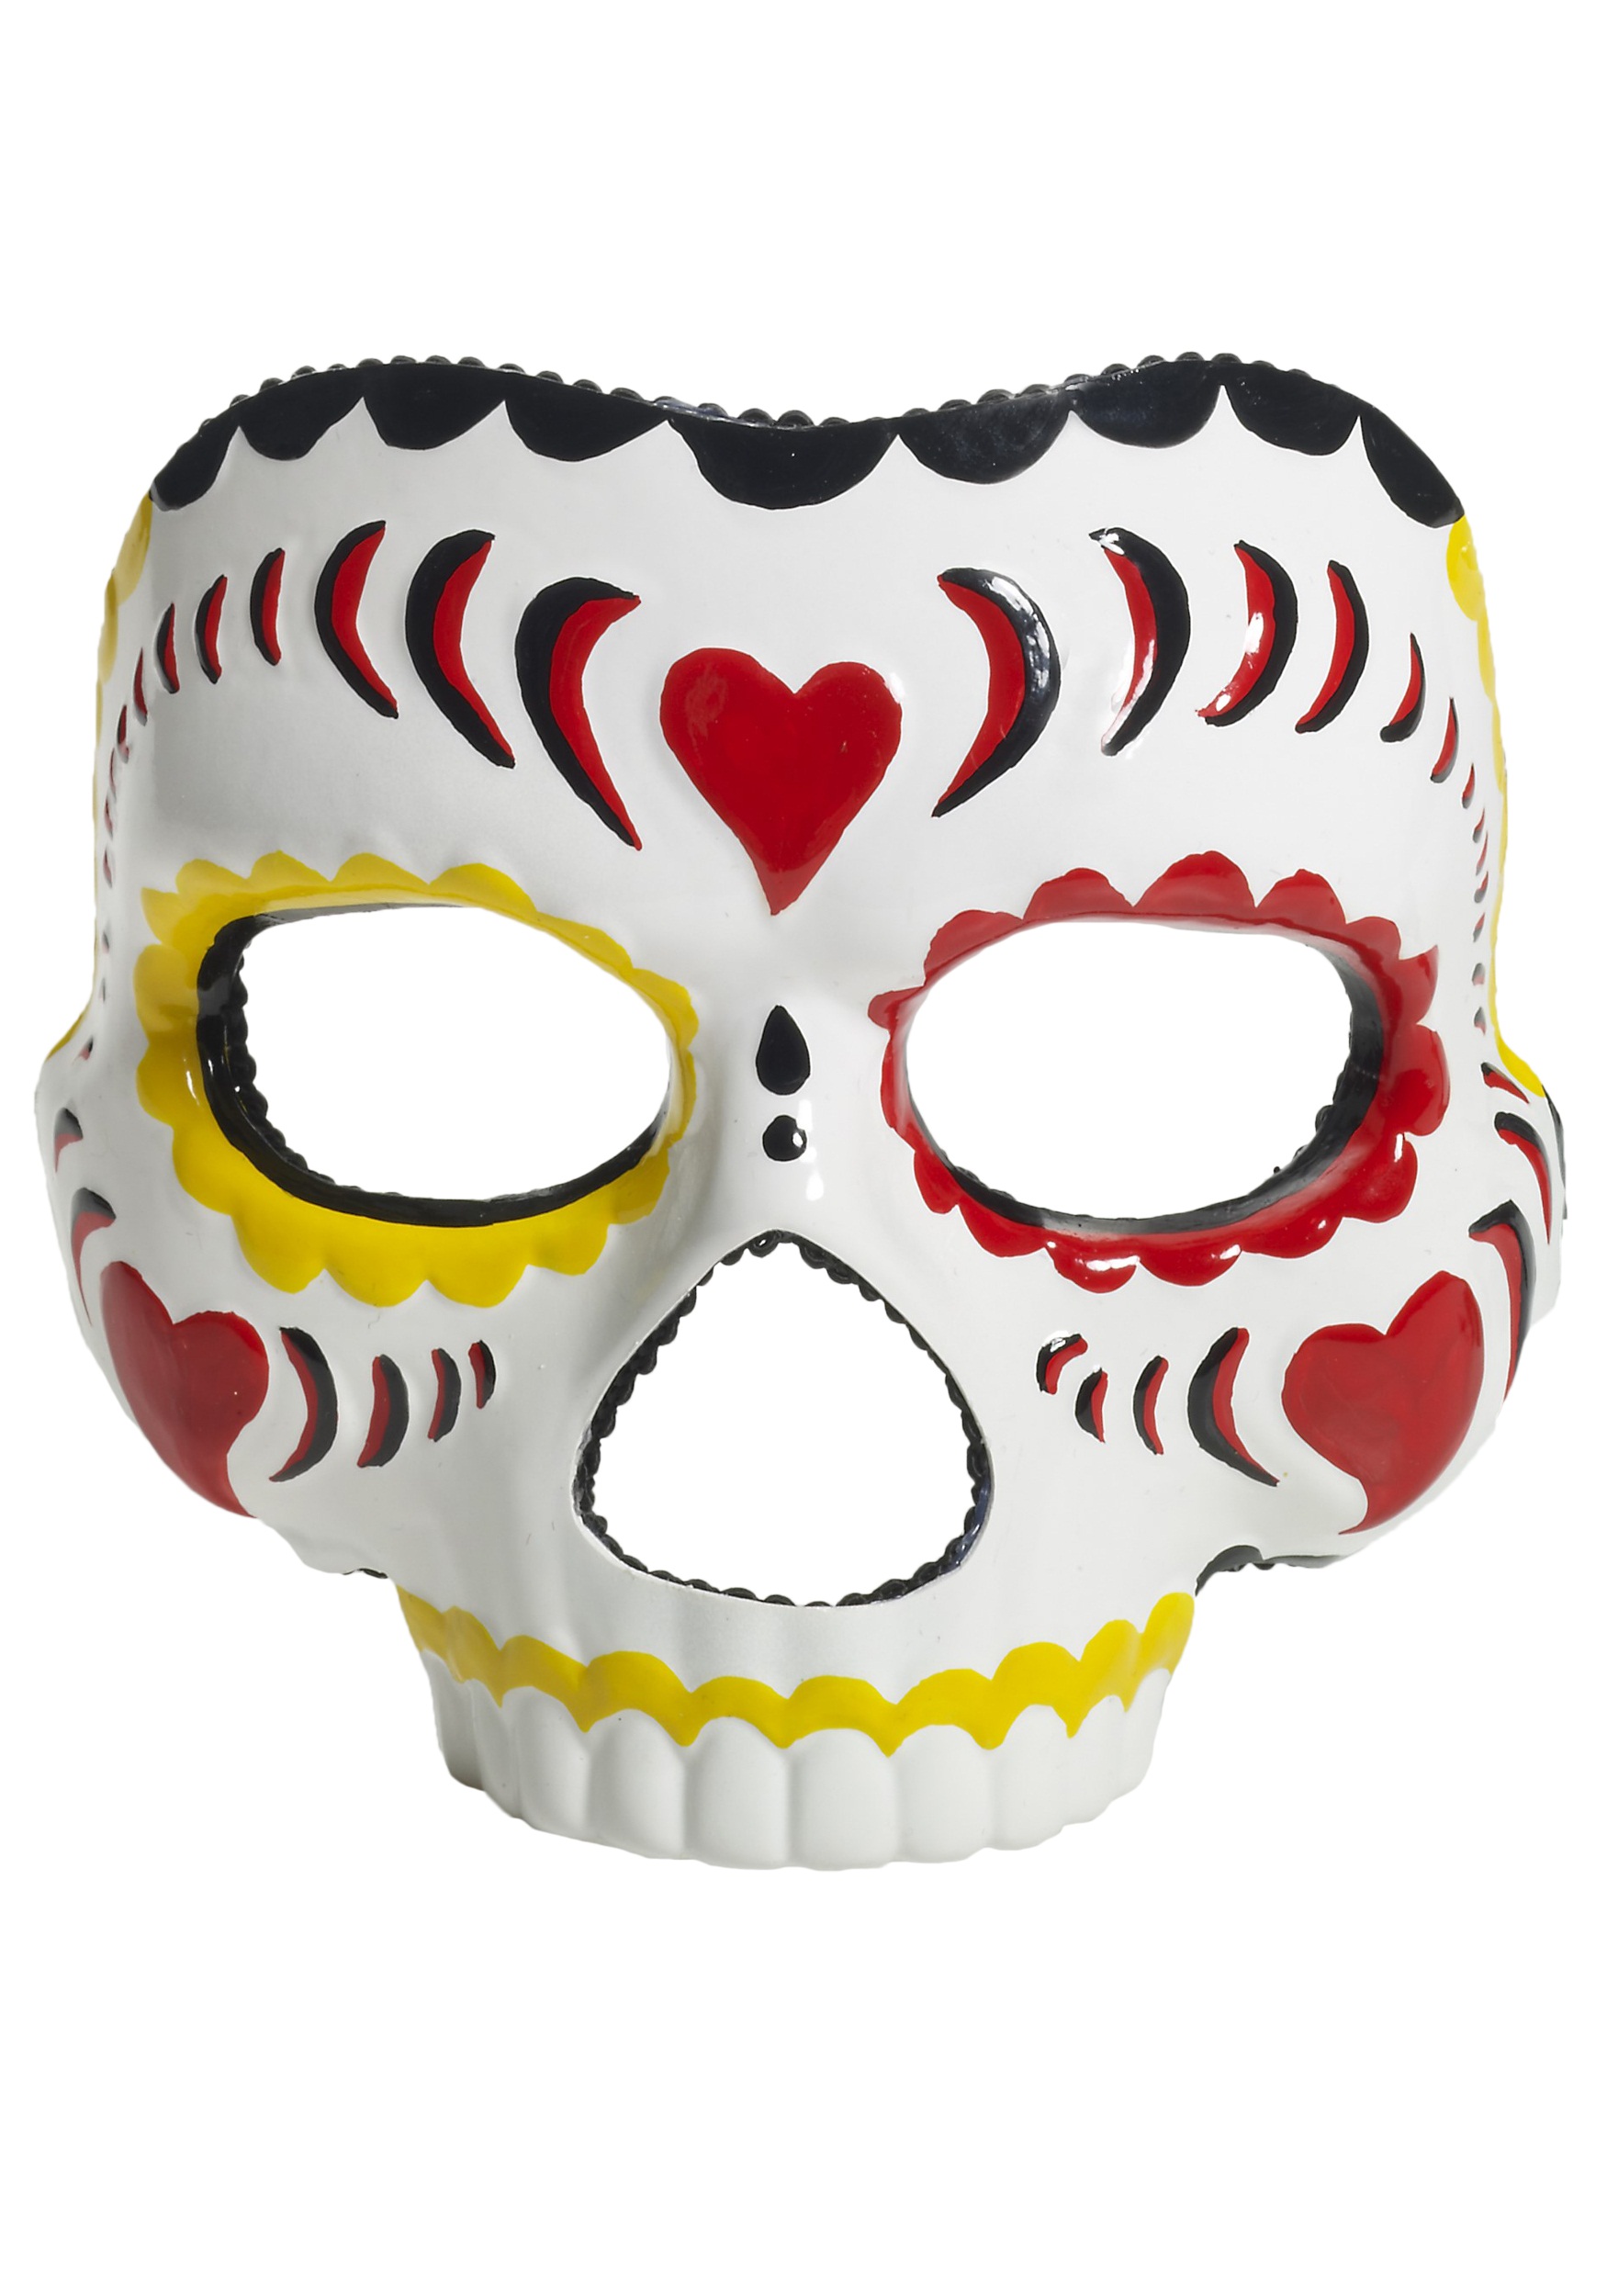 Unisex Day of the Dead Full Face Masquerade Dia de los Muertos Skull Devil Mask 